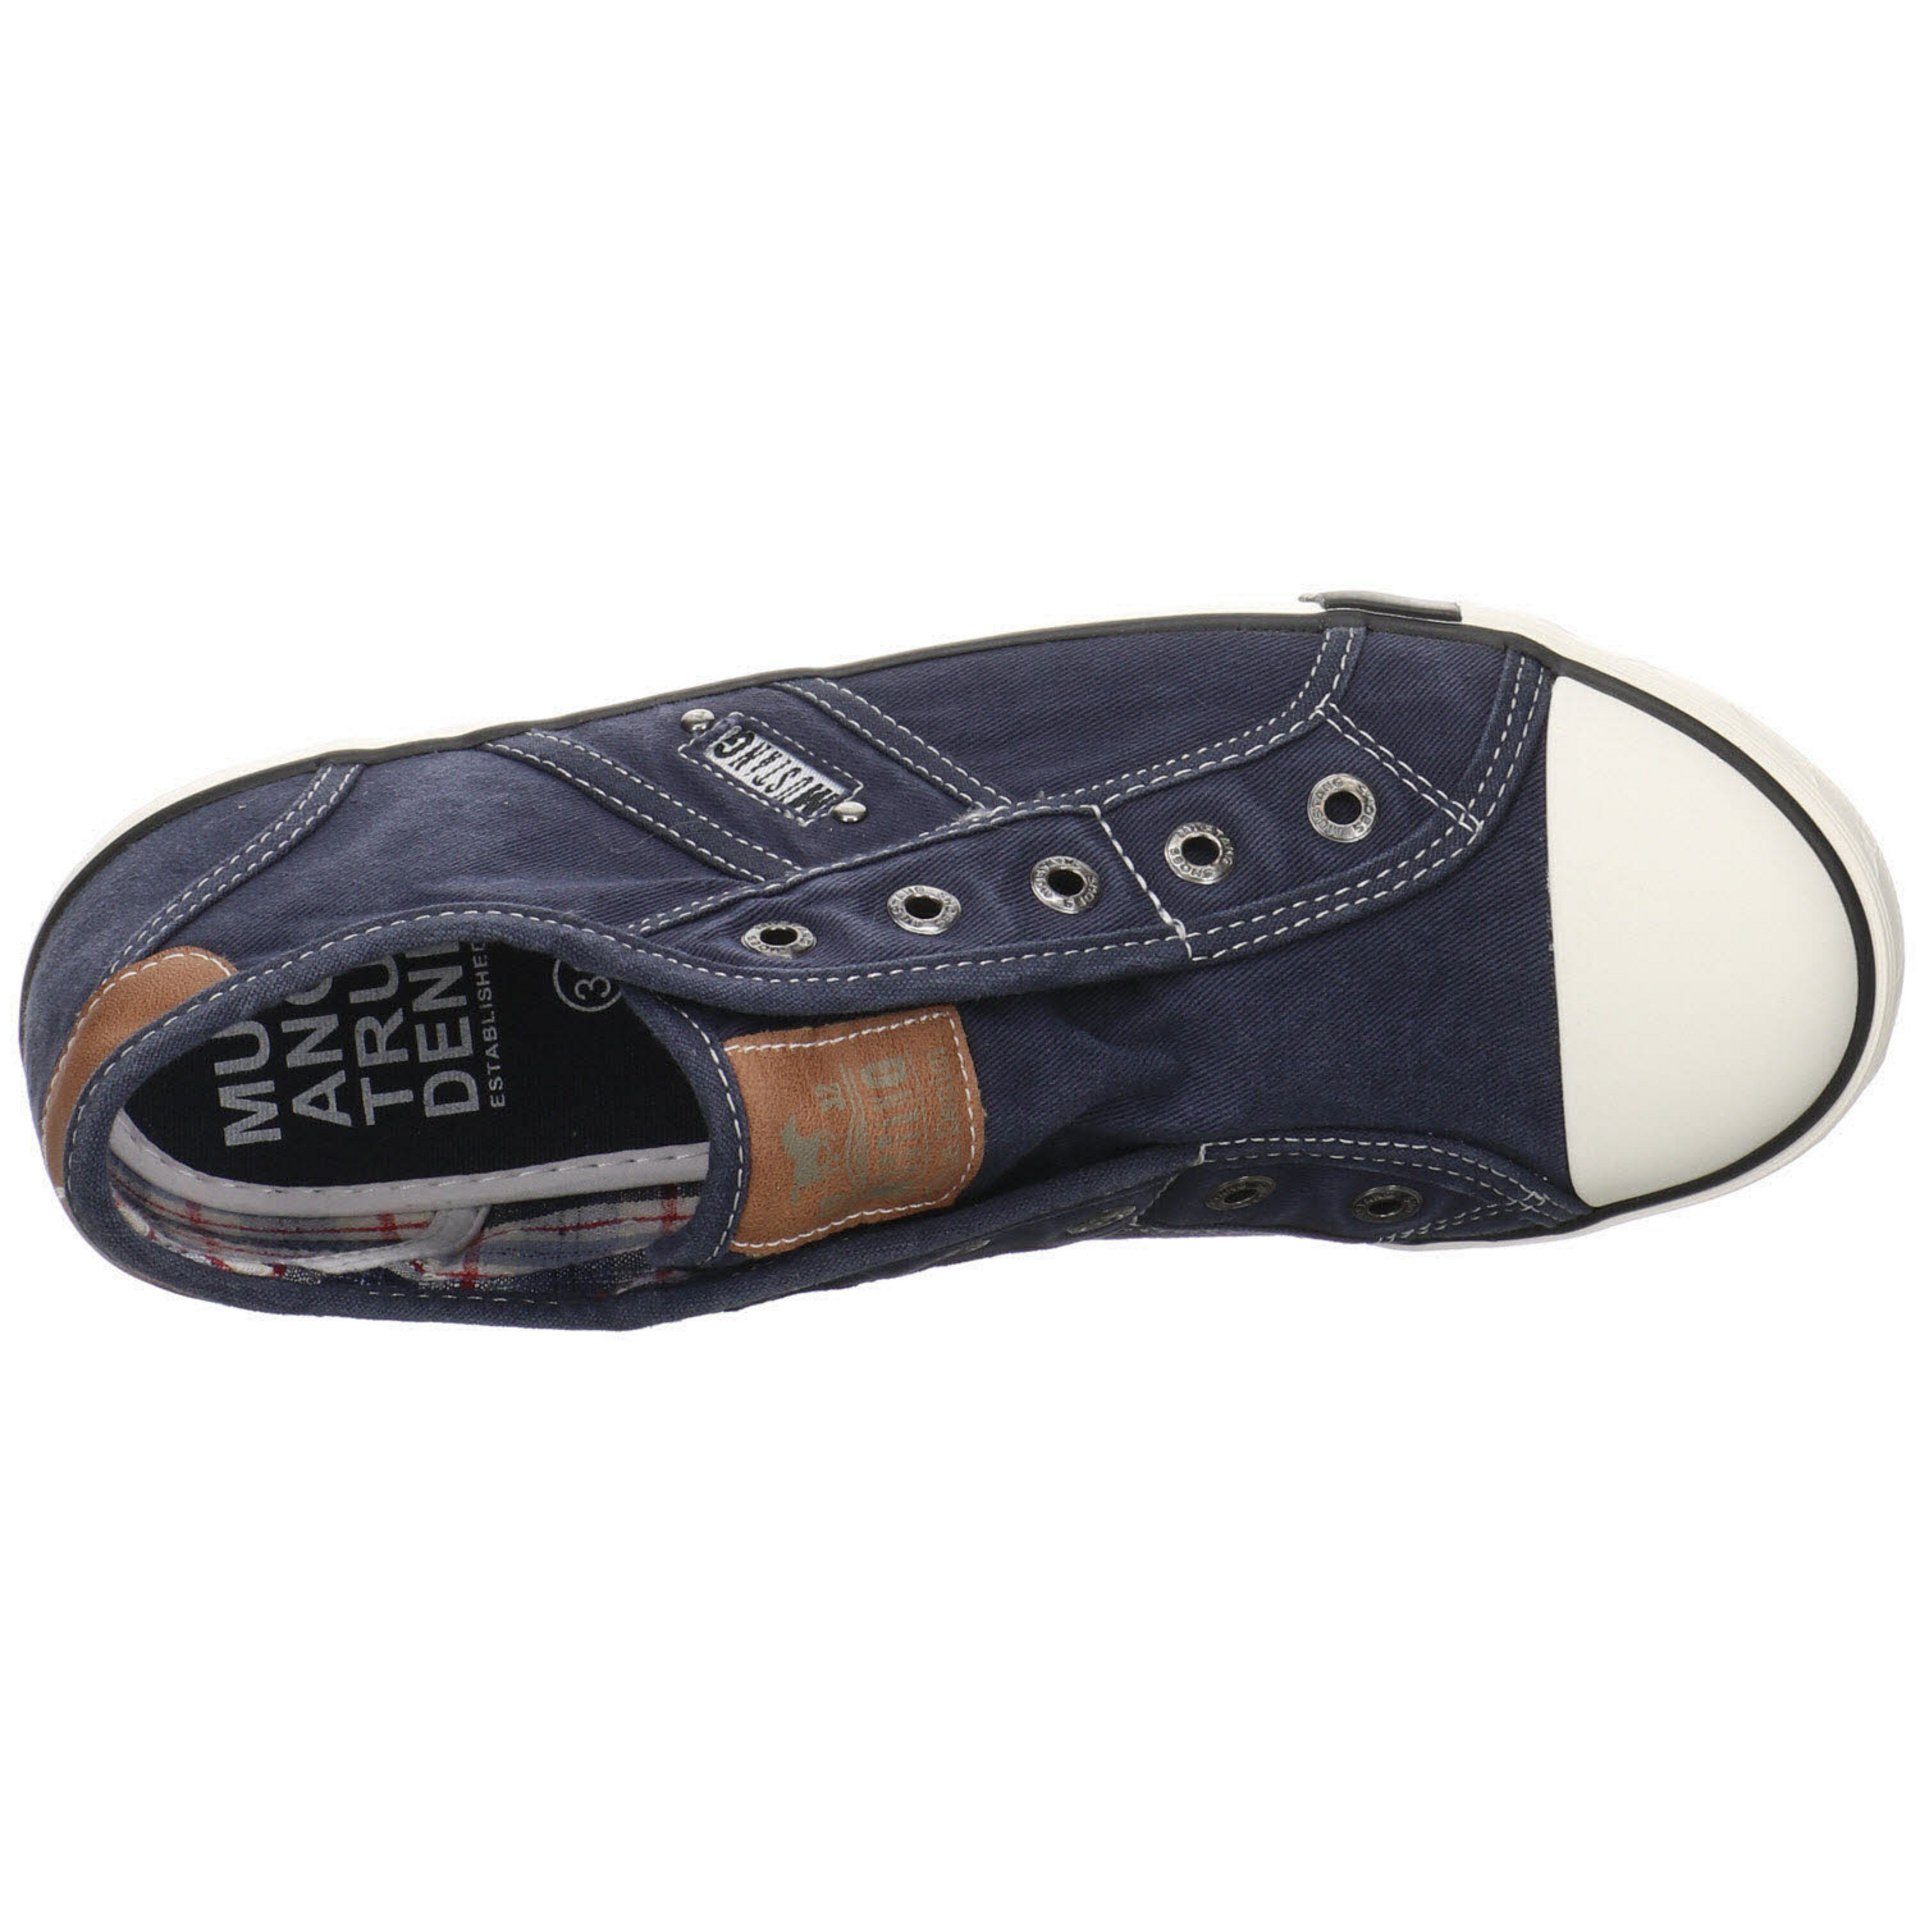 Slip-Ons Synthetikkombination Sneaker Schuhe dunkelblau Sneaker Slip-On Mustang Damen Slipper Shoes Freizeit (13101733)